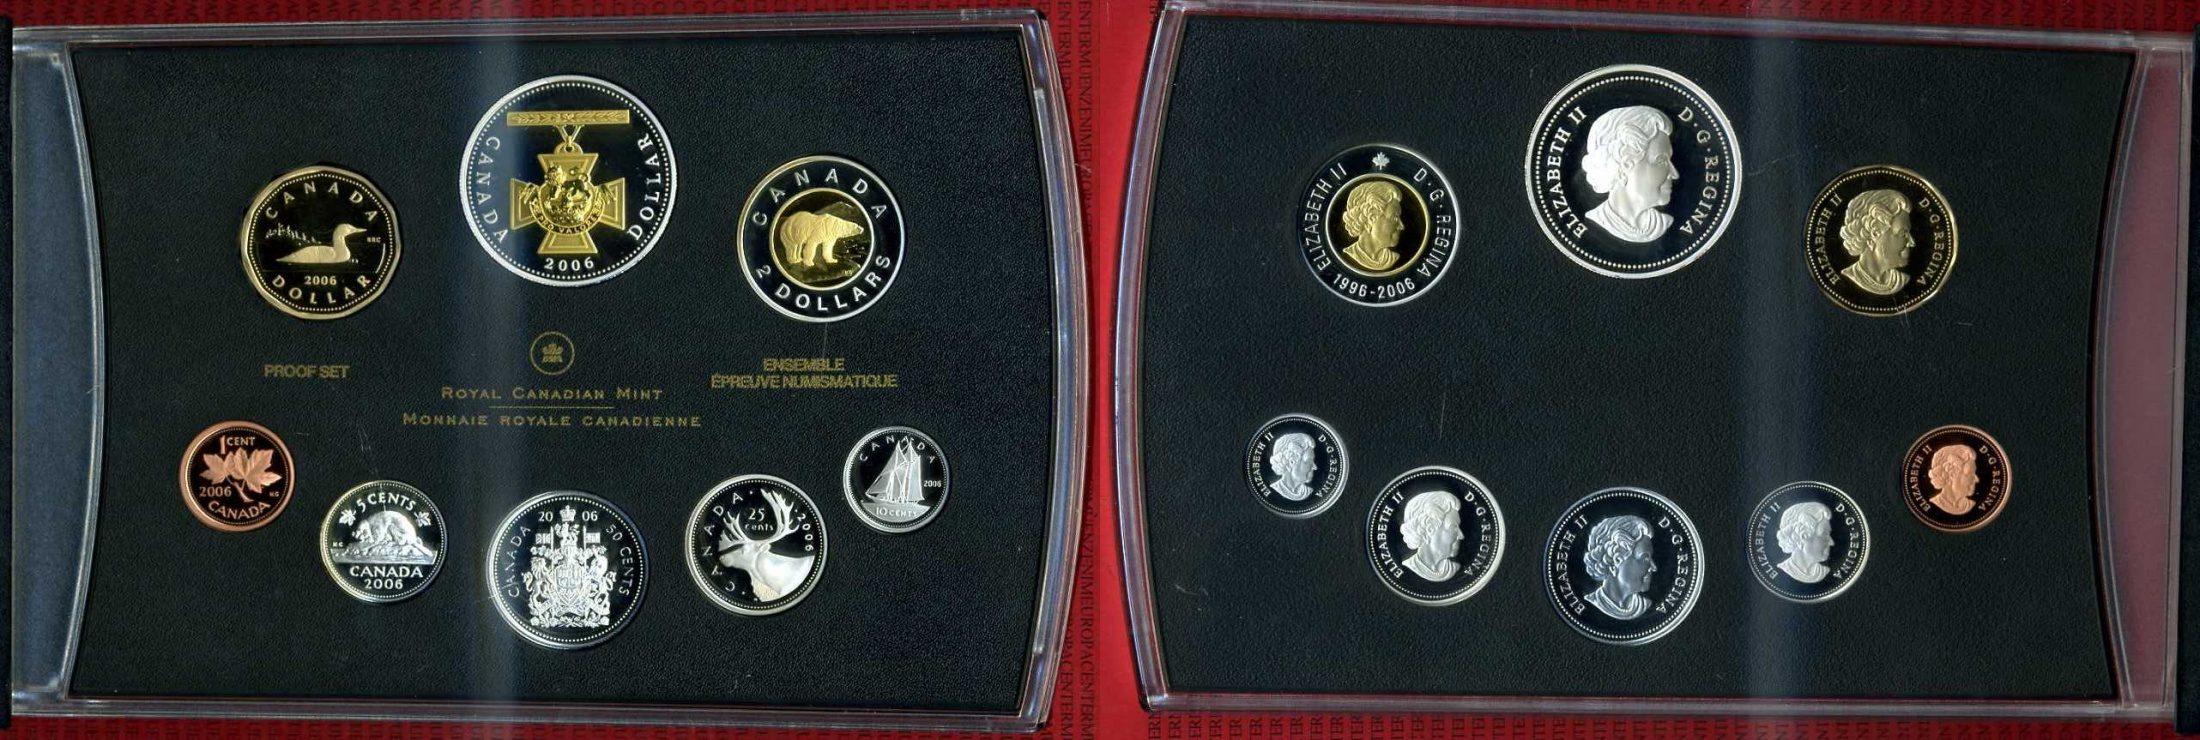 Foto Kanada, Canada Kursmünzensatz Kms mit Goldapplikation 2006